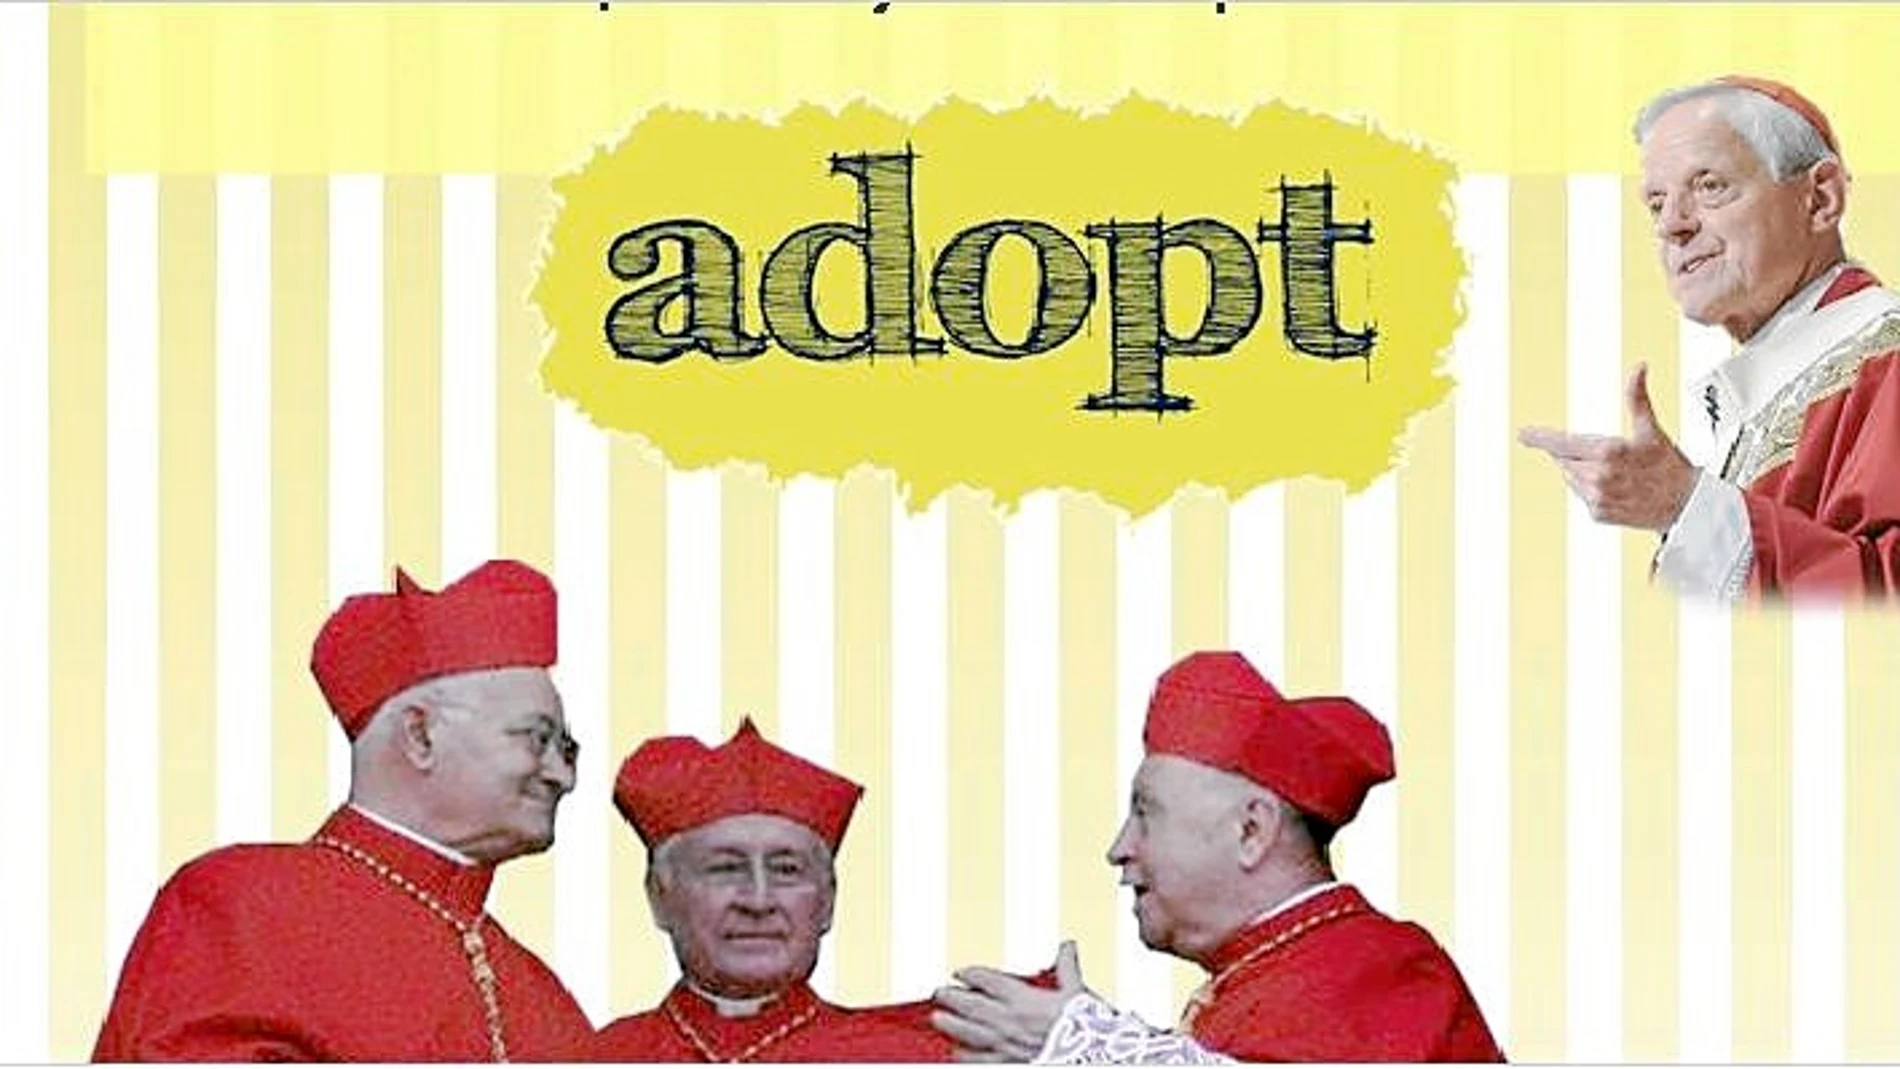 La página para adoptar a un cardenal cuenta con más de 380.000 firmantes